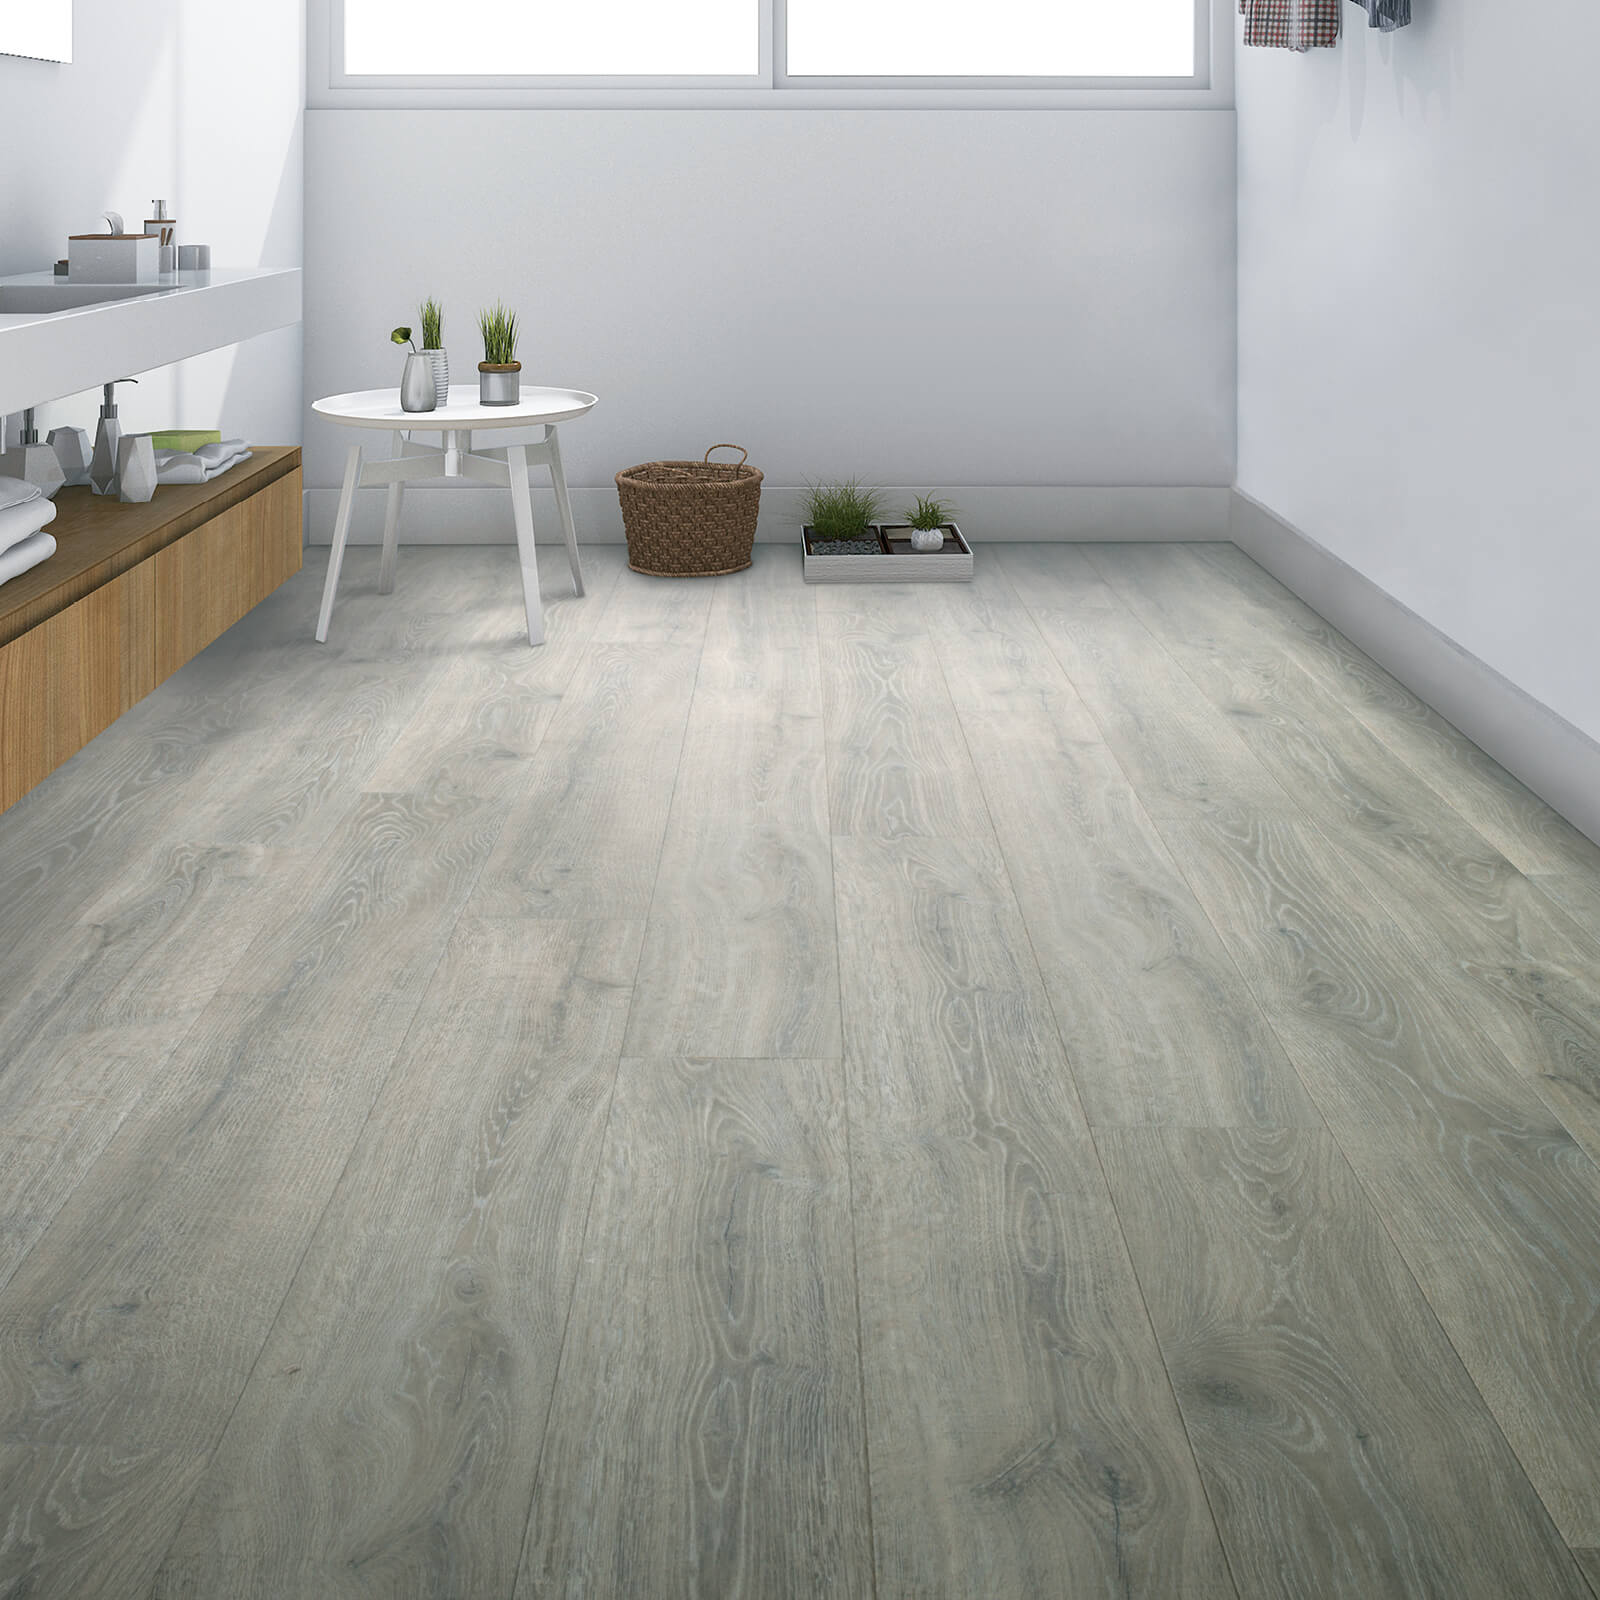 wood-look laminate floors